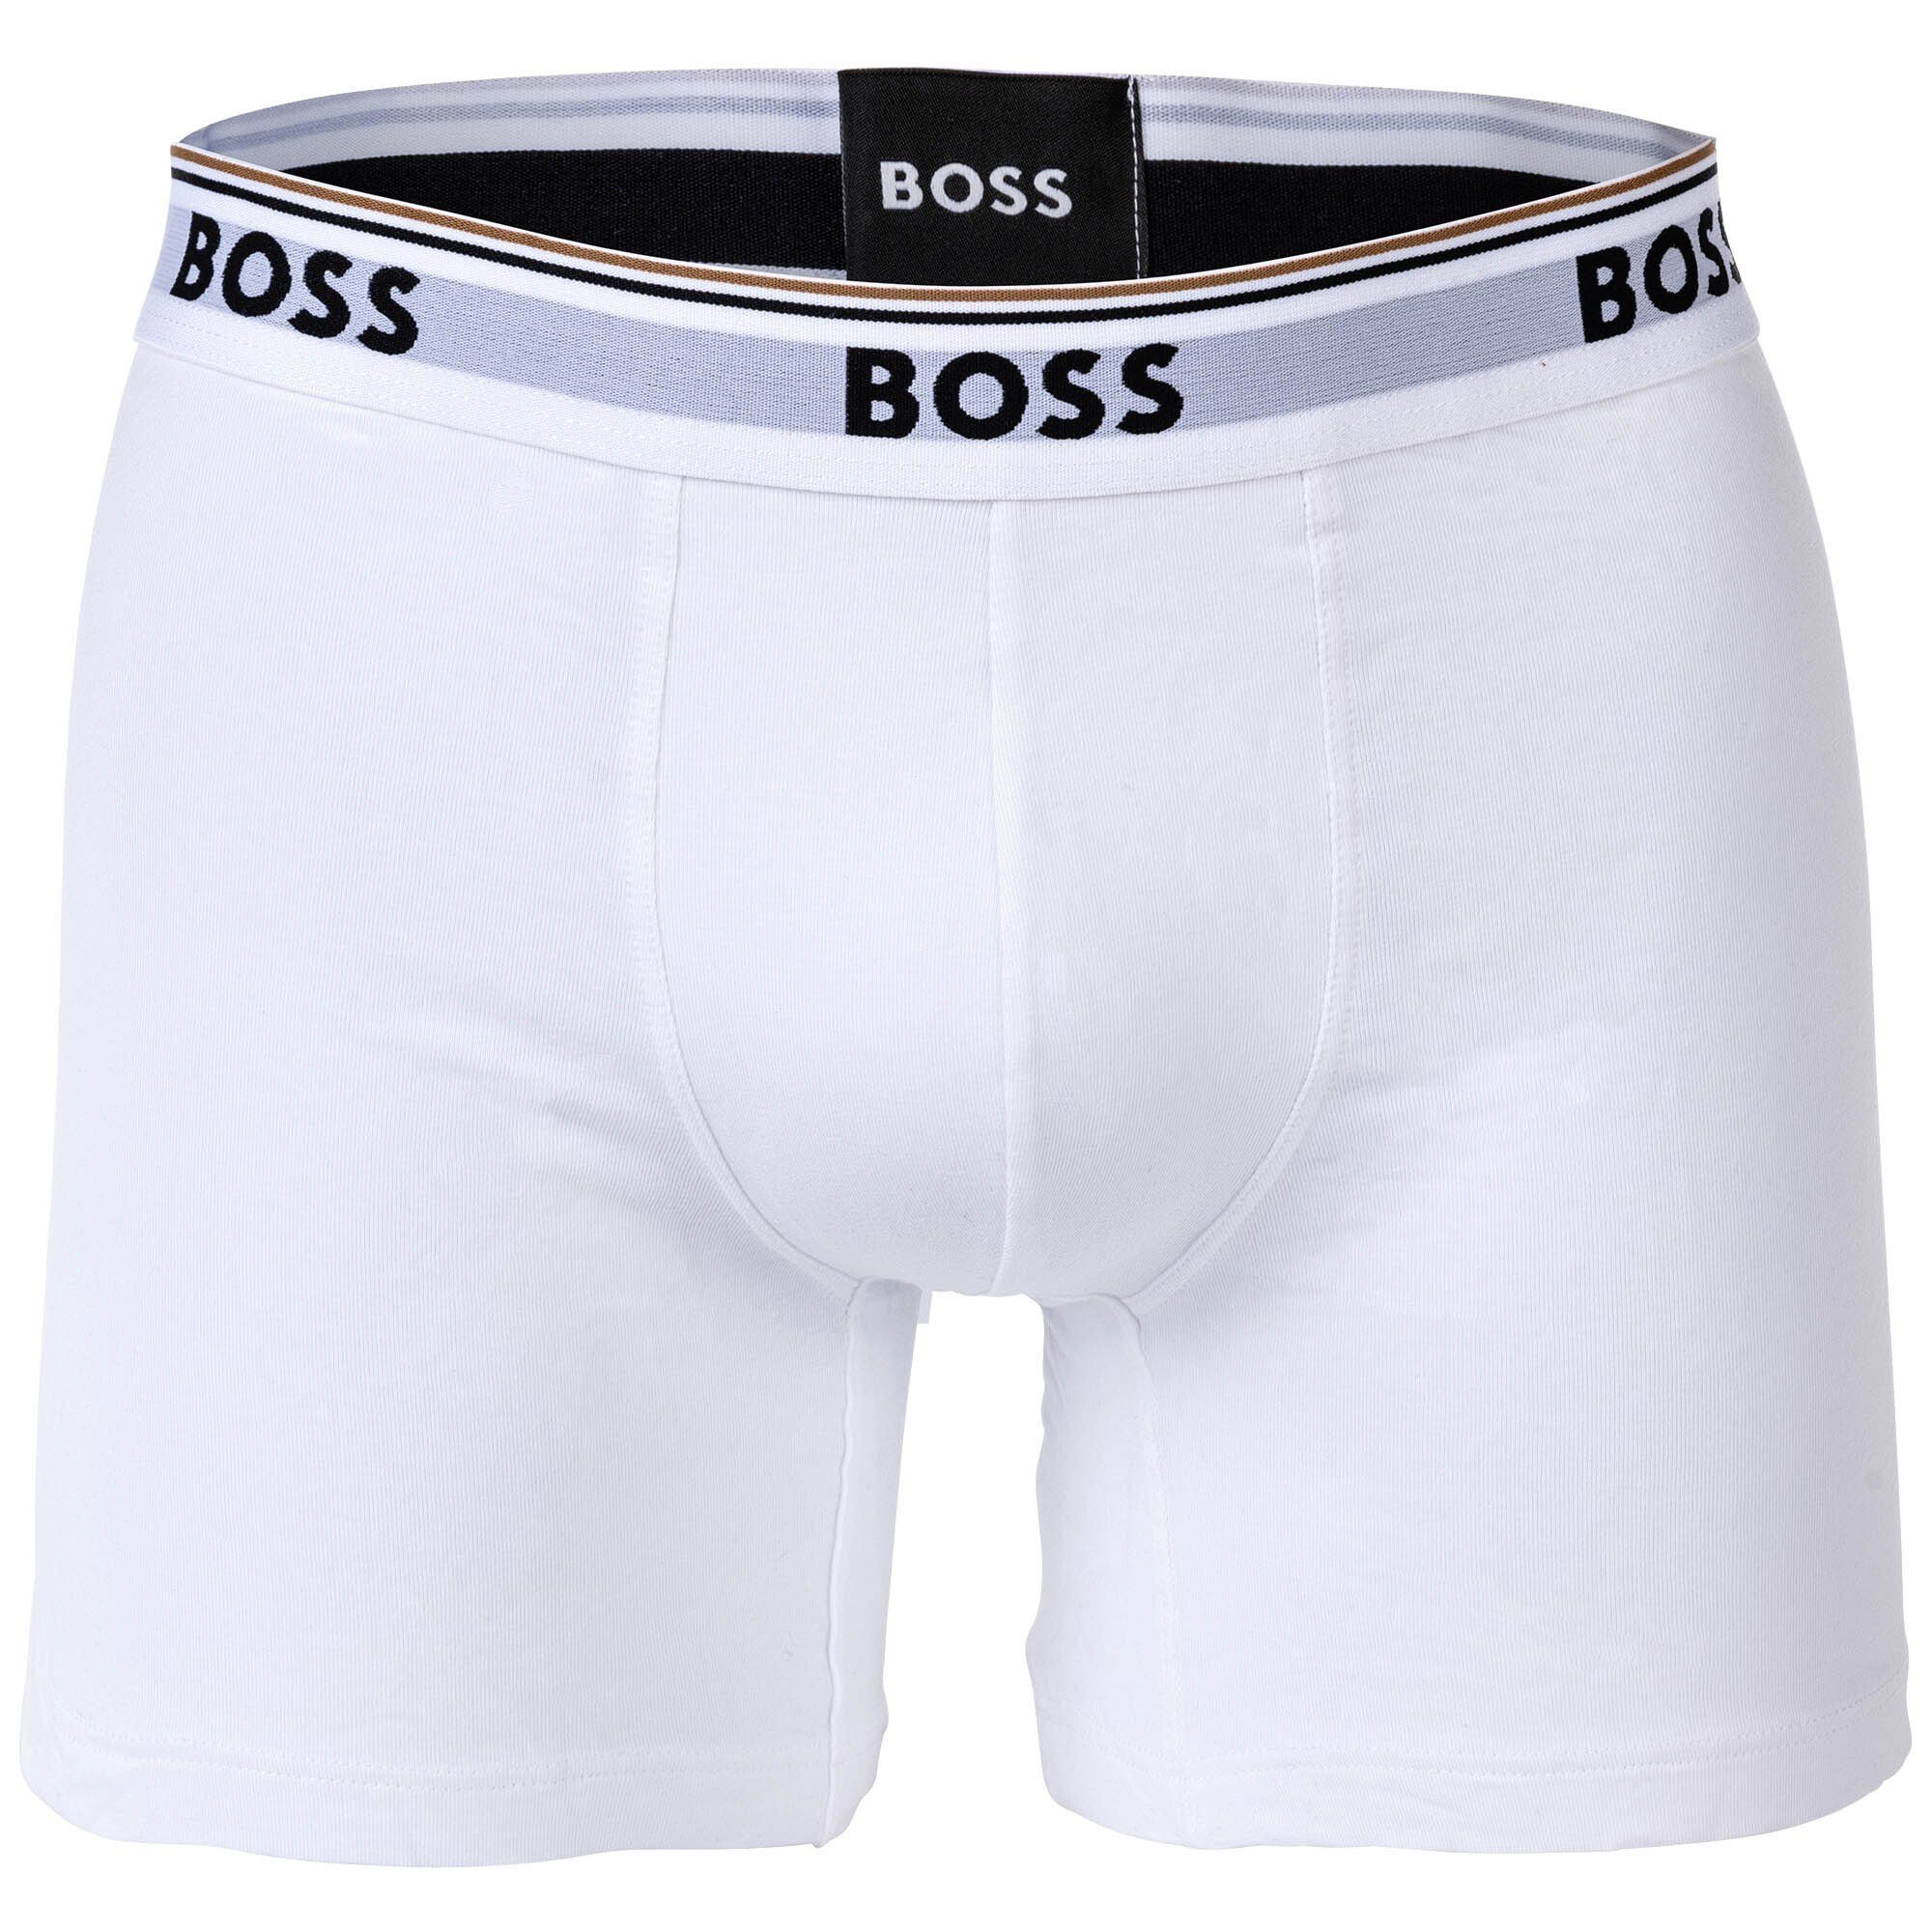 BOSS Boxer Herren - Pack Boxershorts, 6er 6P Weiß/Grau/Schwarz Boxer Briefs